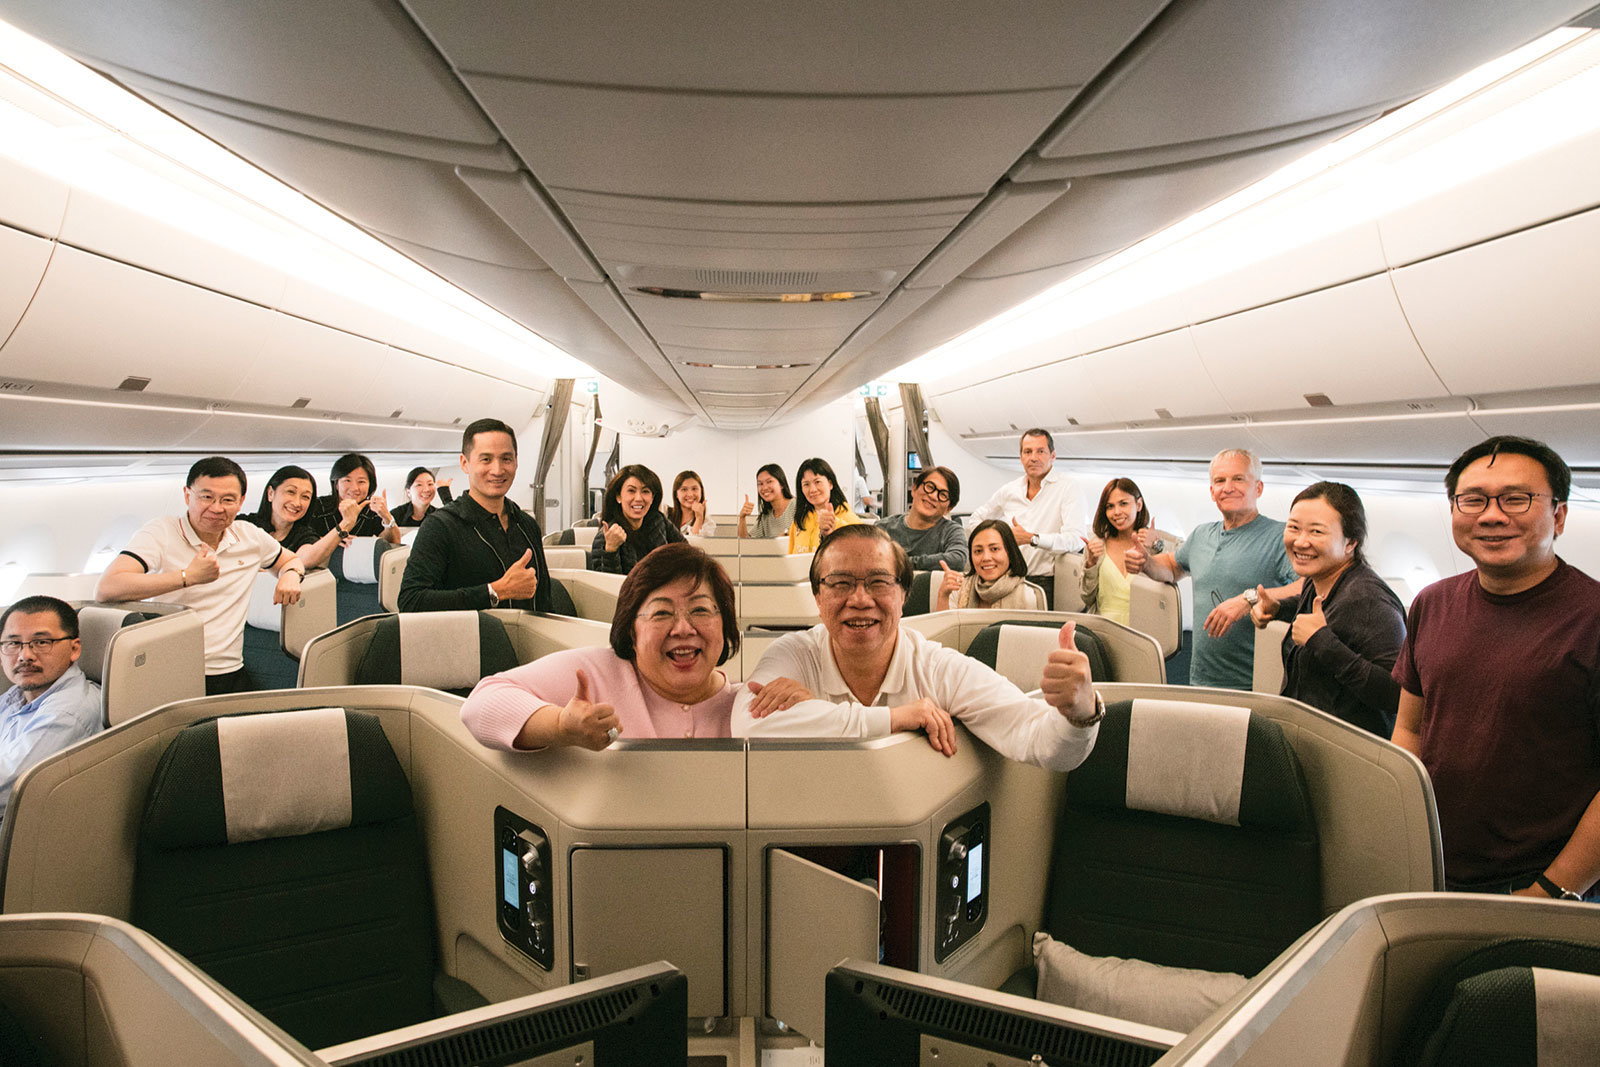 馬可孛羅會會員登上空中巴士A350-900客機展開交付之旅